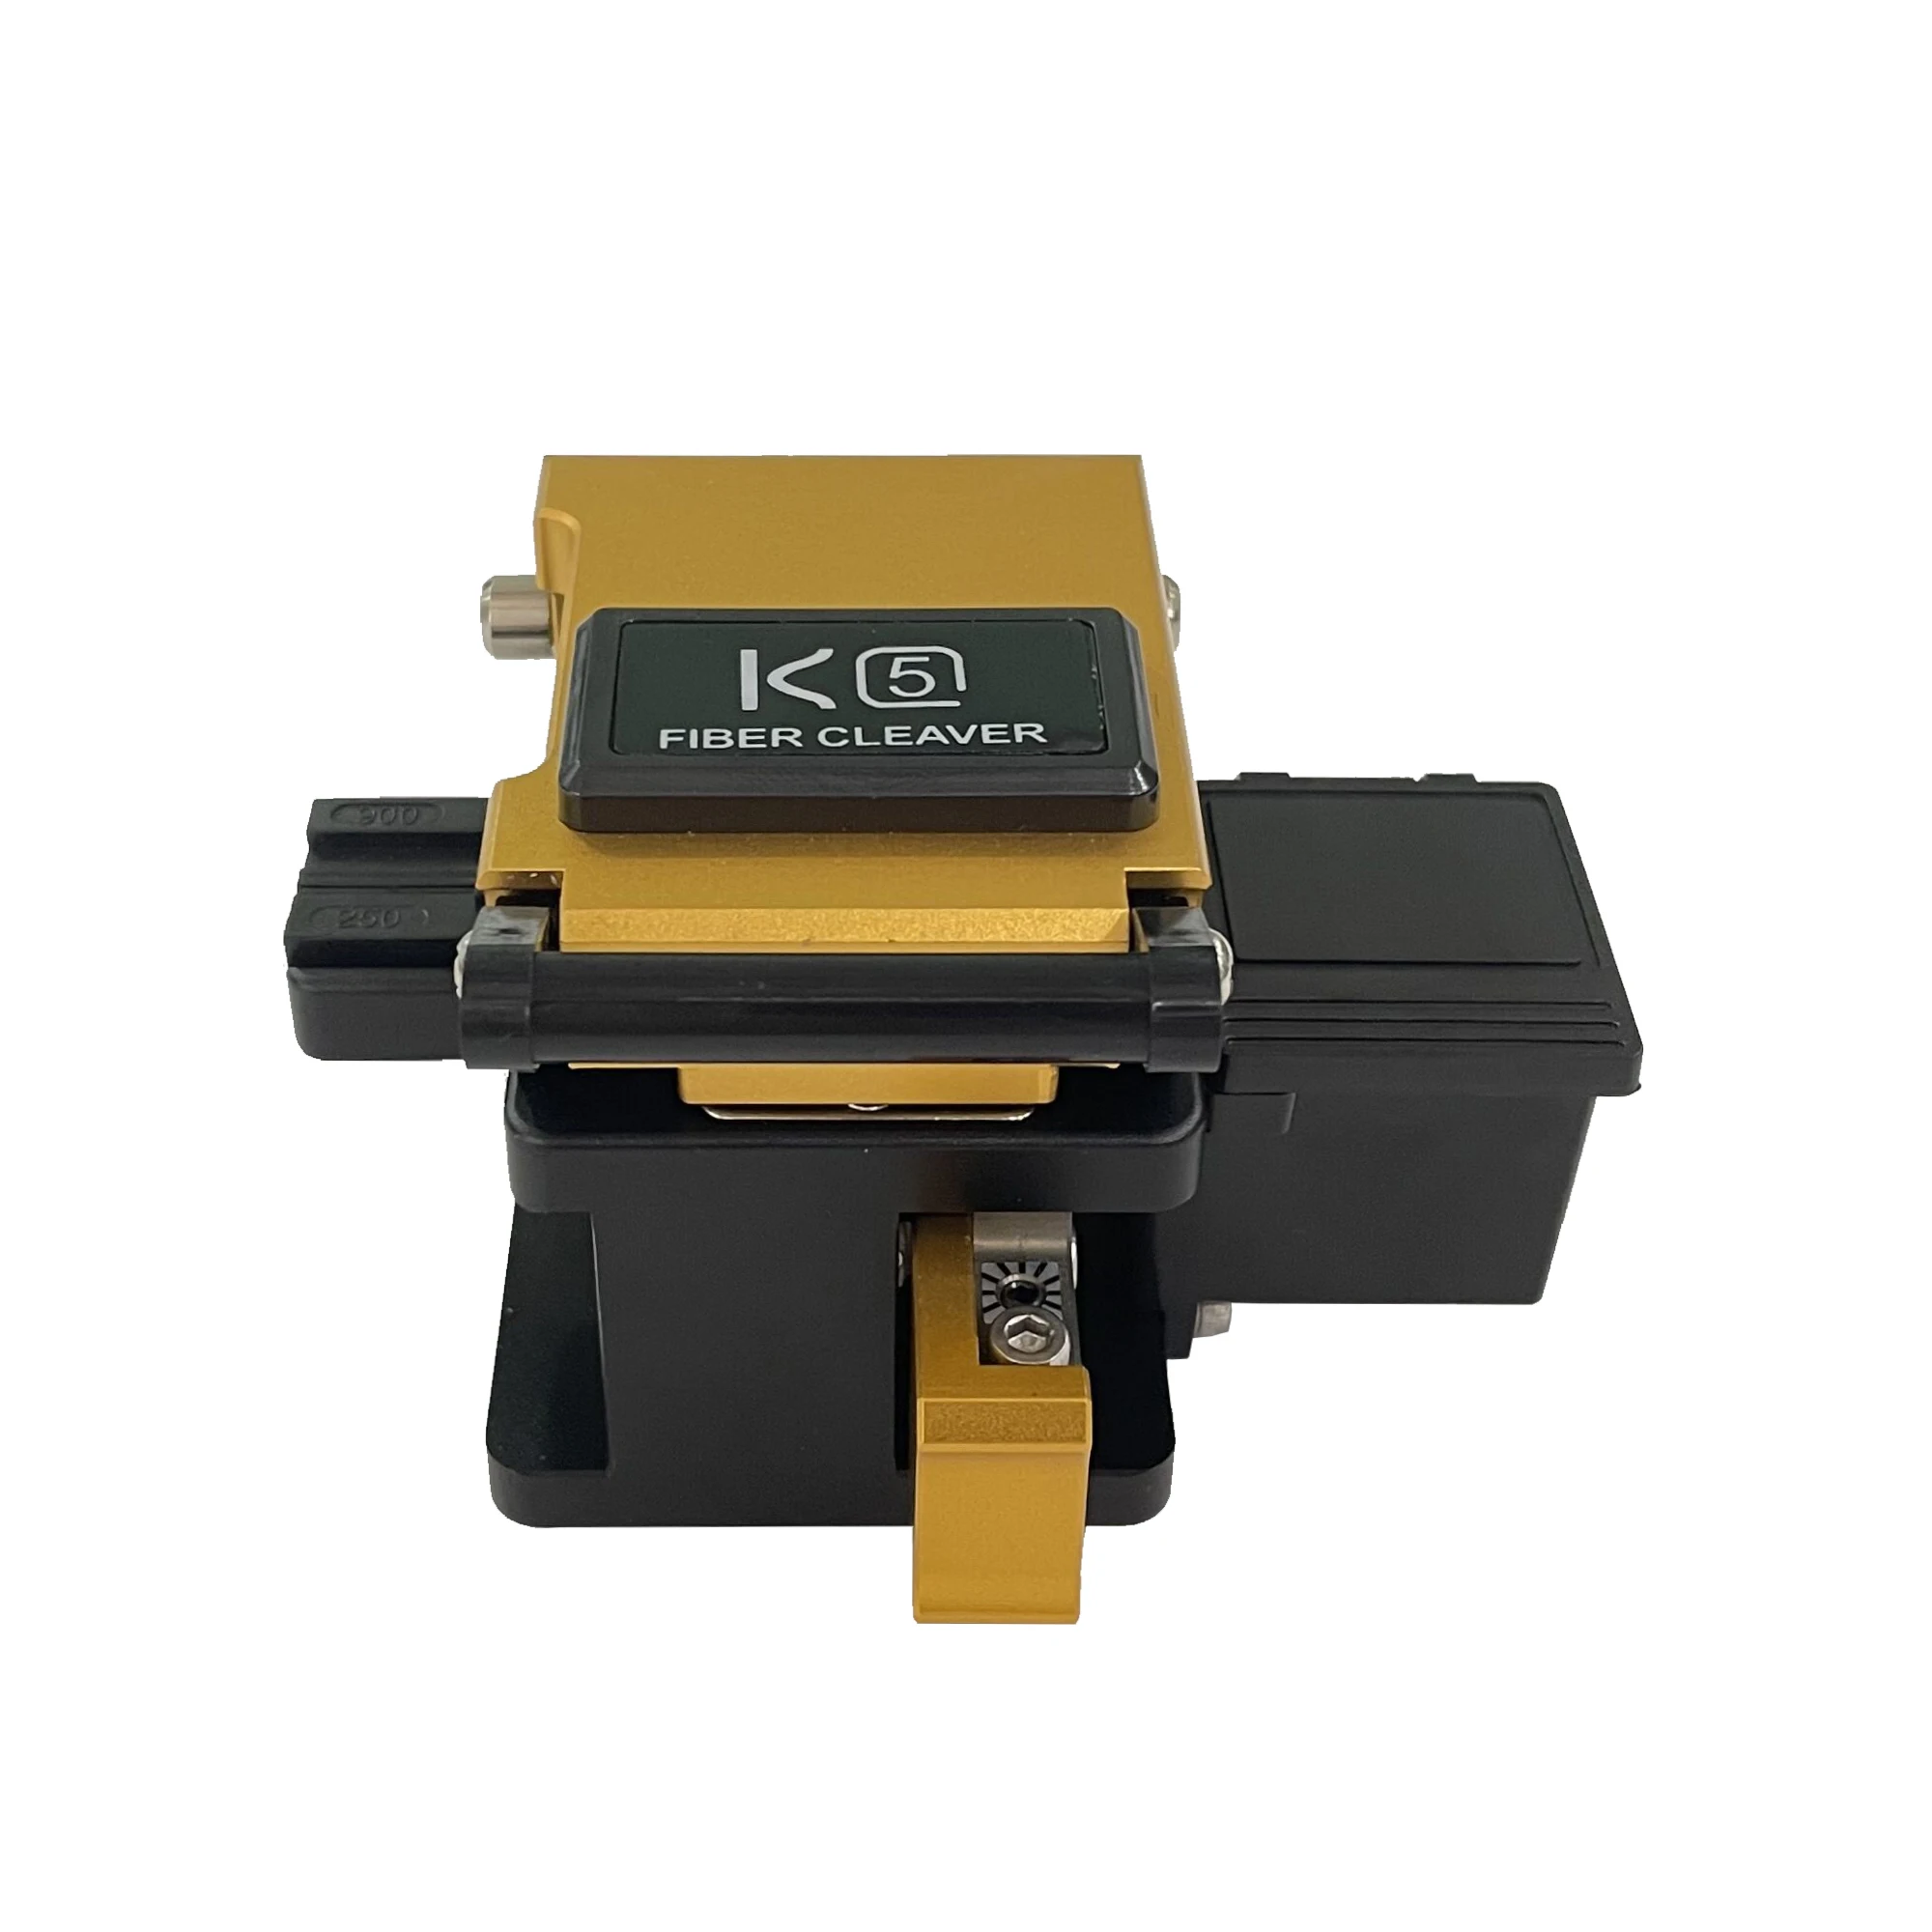 

K5 High Precision Cut optical fiber optic Cleaver price FTTH Tool Kit Optical Fibre Cutter Fiber Cutting Tools